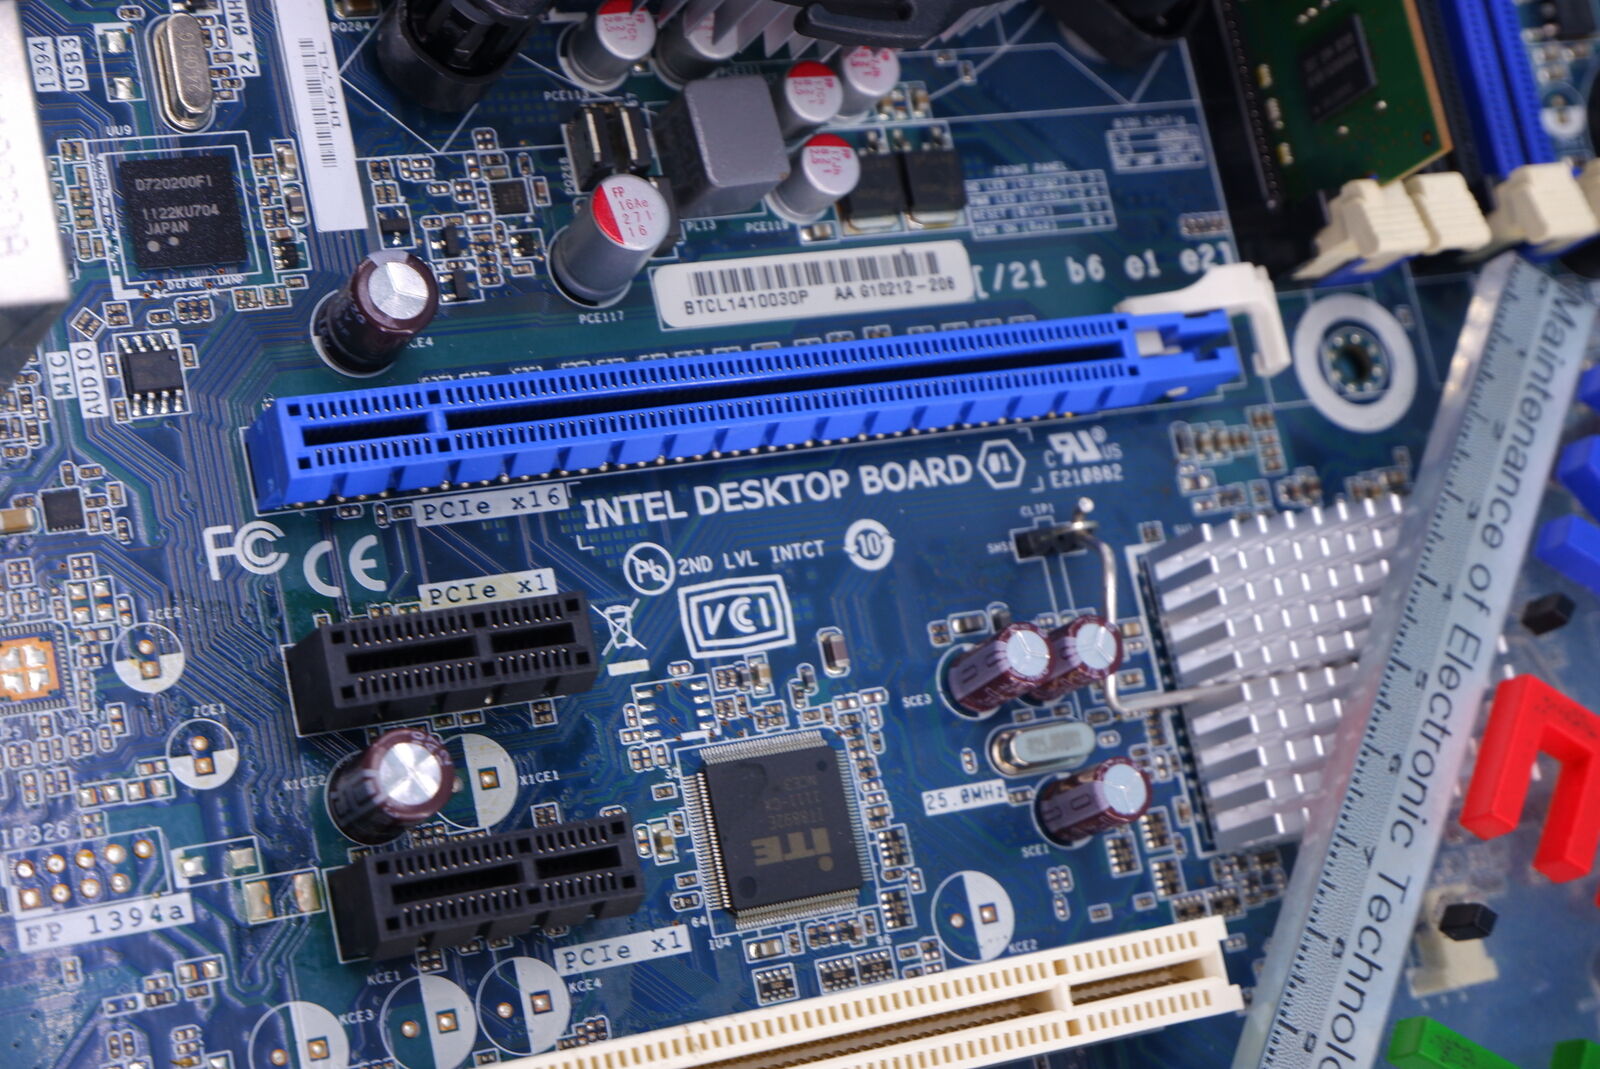 Материнские платы desktop. Intel desktop Board /21 b6 e1. Intel desktop Board 21b6e1e2. Материнская плата Intel desktop Board 01. Материнка Intel desktop Board 02.